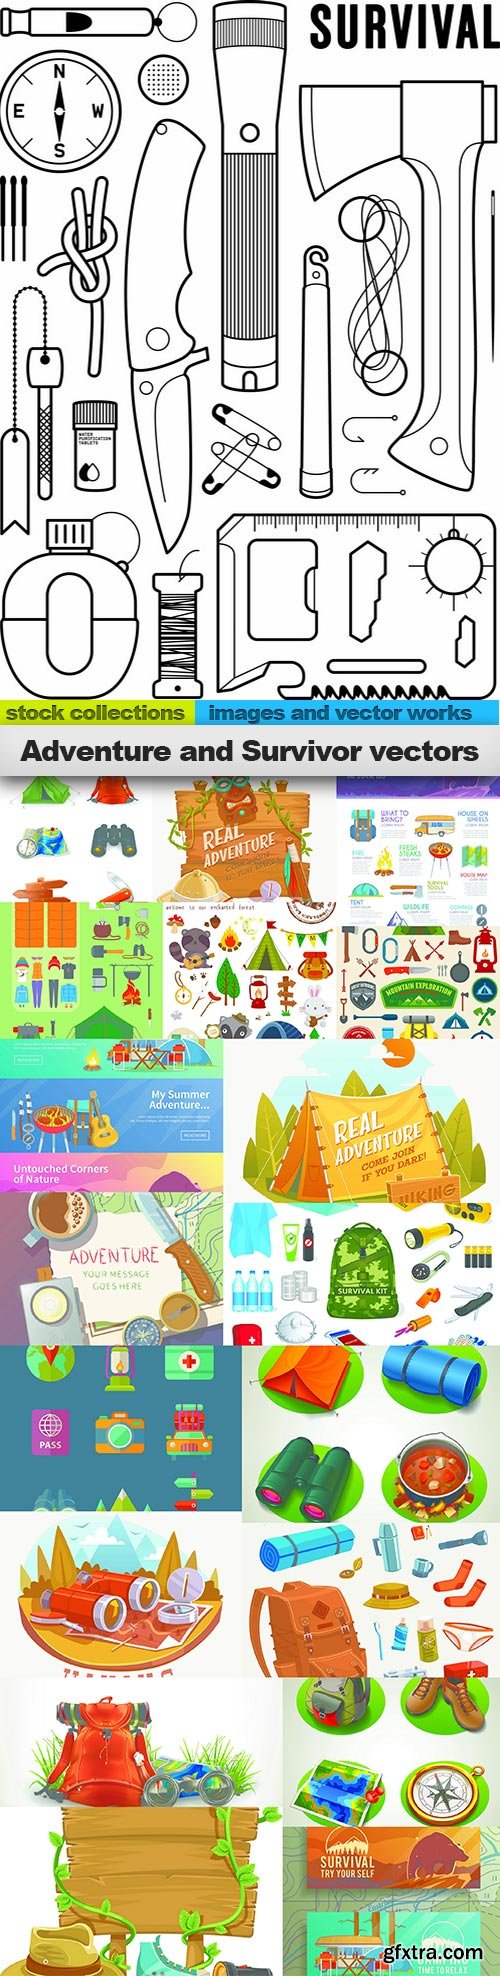 Adventure and Survivor vectors, 20 x EPS